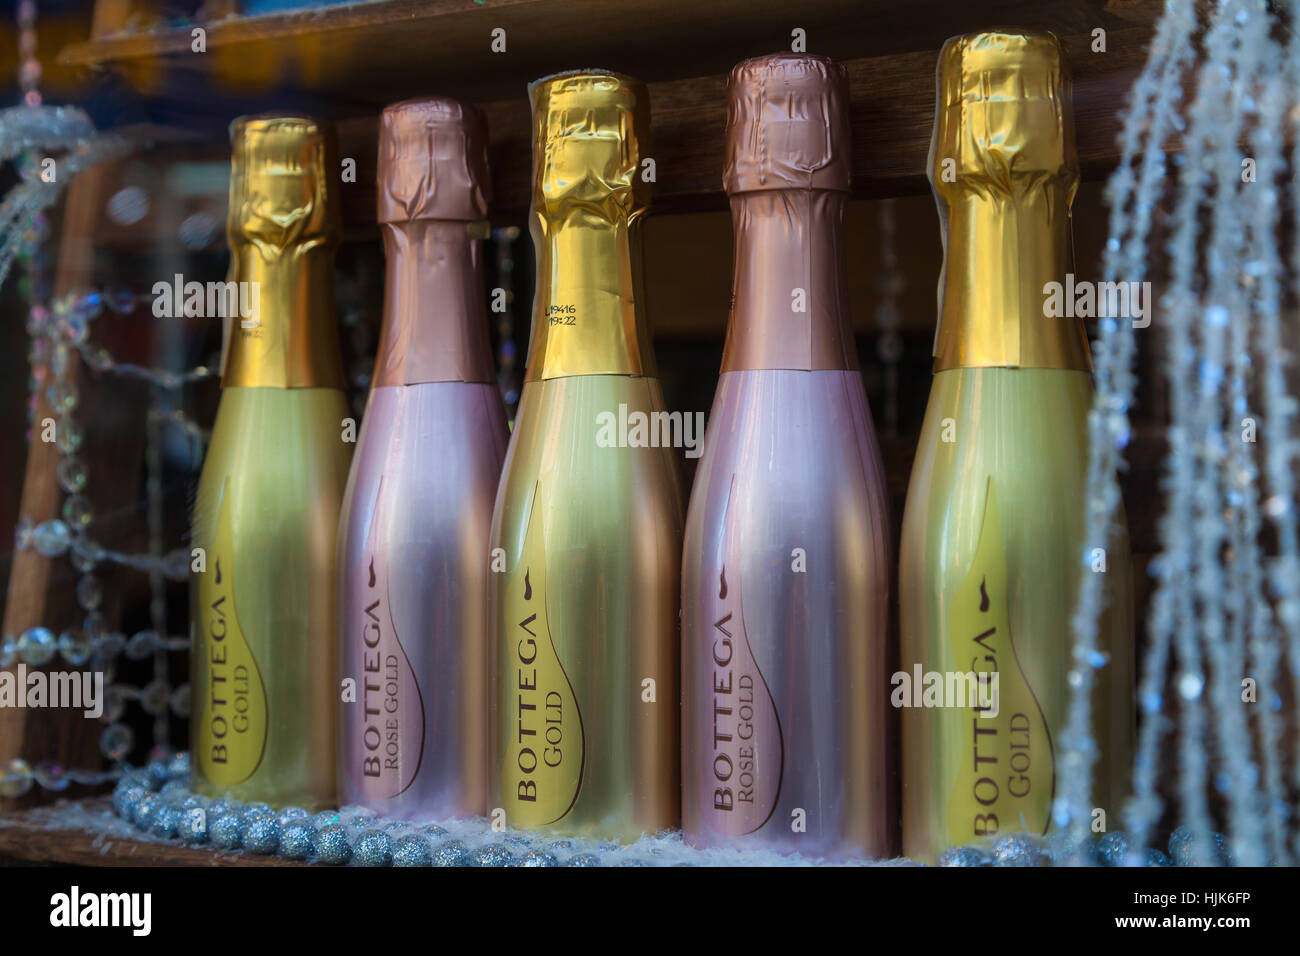 Attractive Bottles in shop window Stock Photo